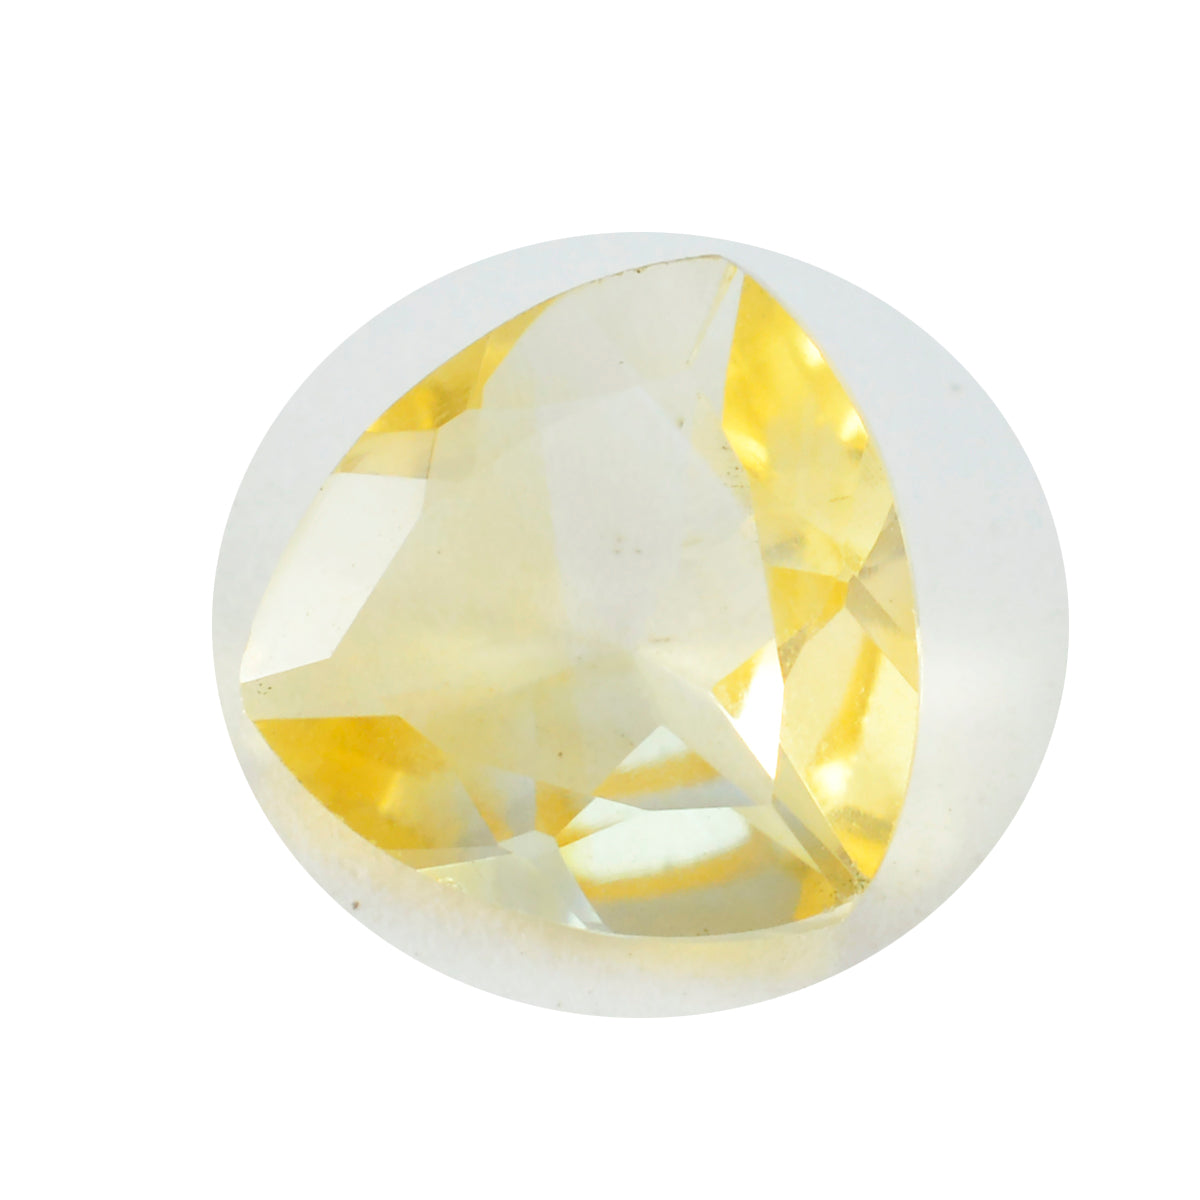 riyogems 1шт натуральный желтый цитрин ограненный 13x13 мм форма триллион камень превосходного качества